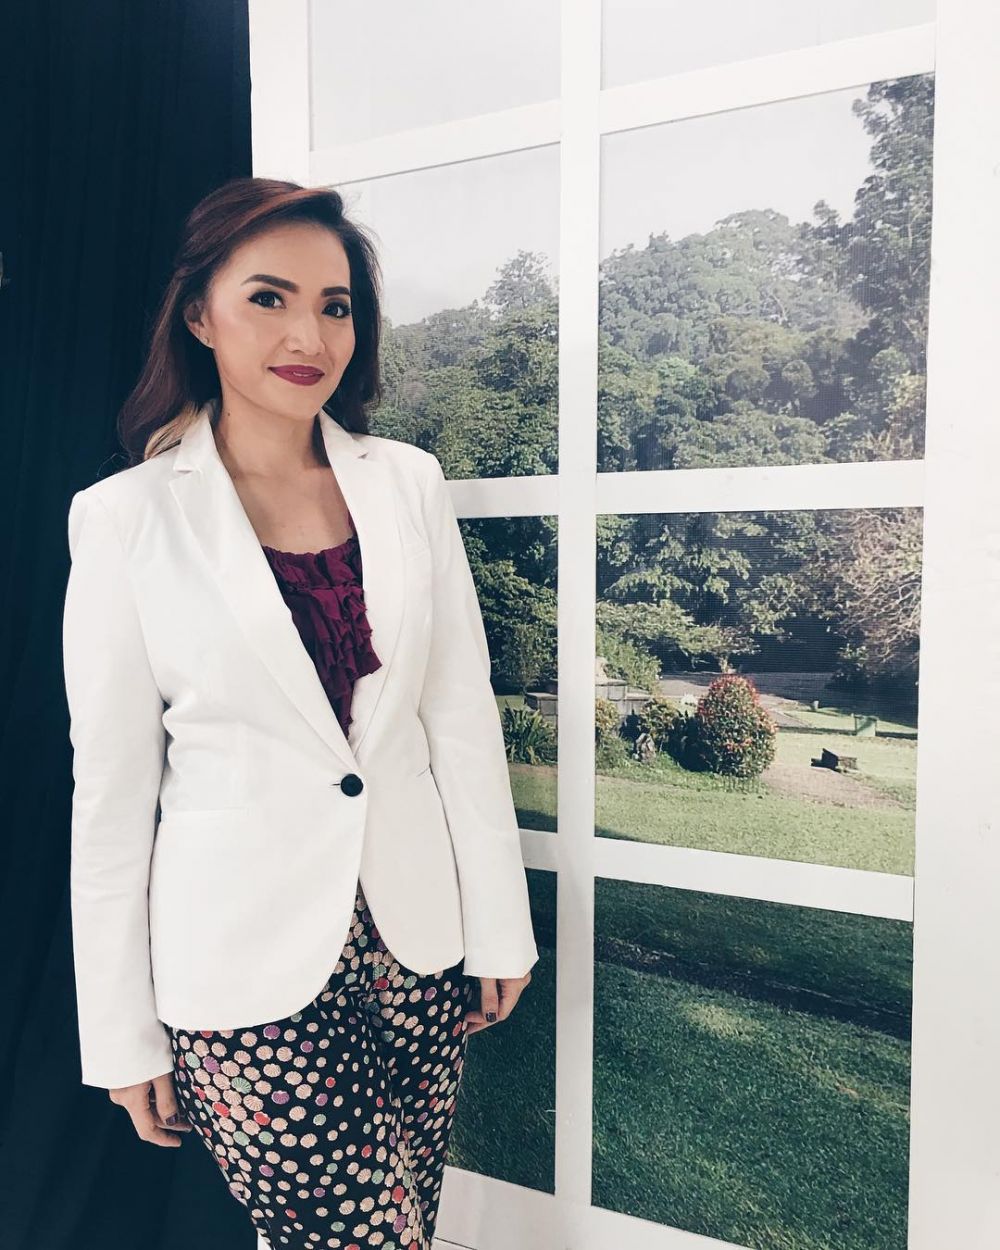 10 Potret cantiknya dokter timnas wanita Indonesia, bikin nggak fokus